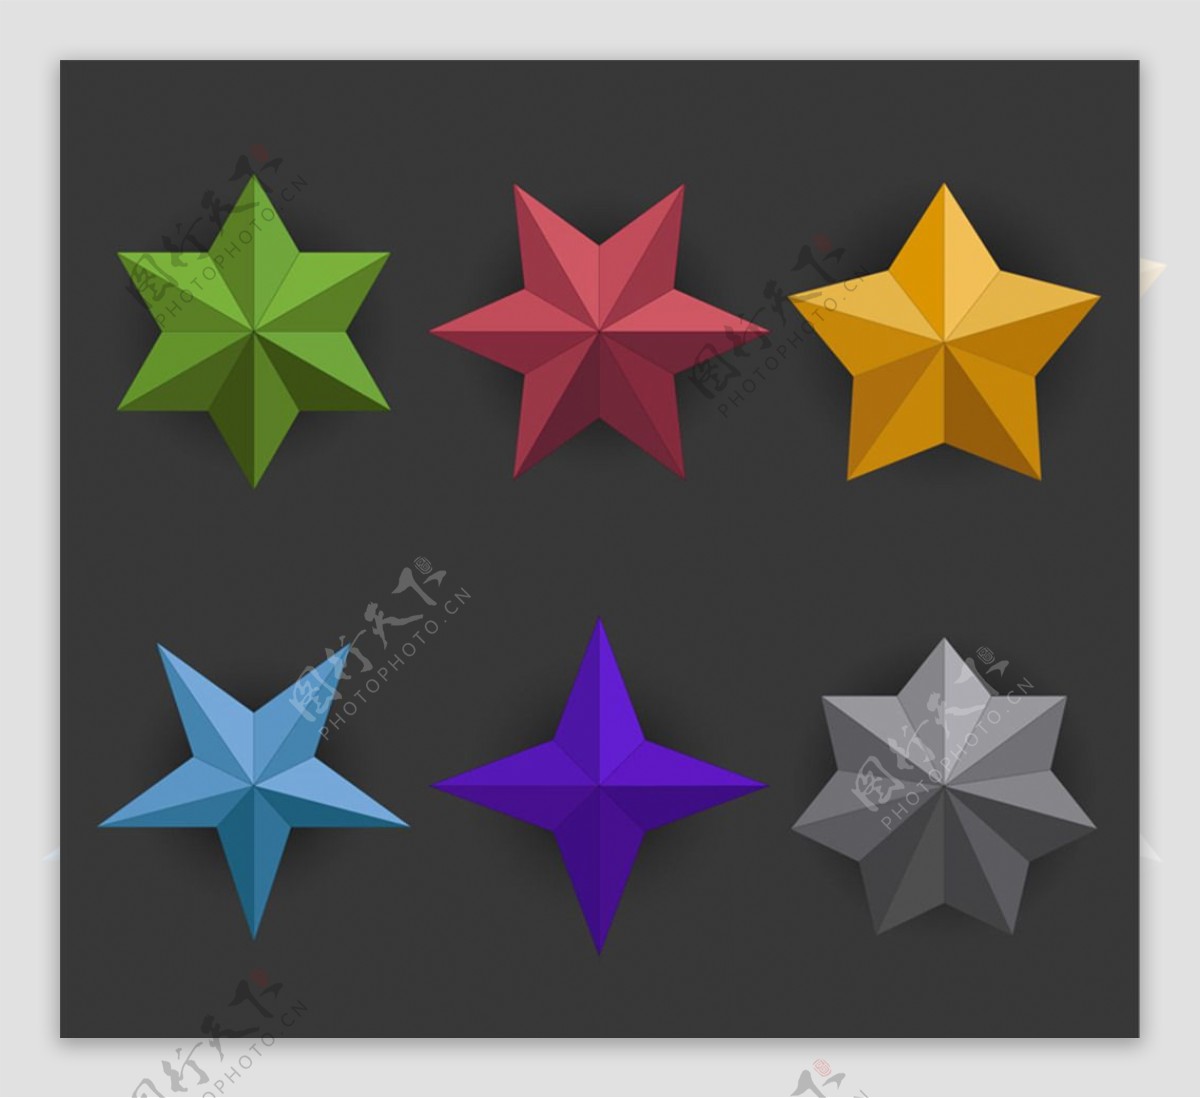 彩色星星设计矢量图